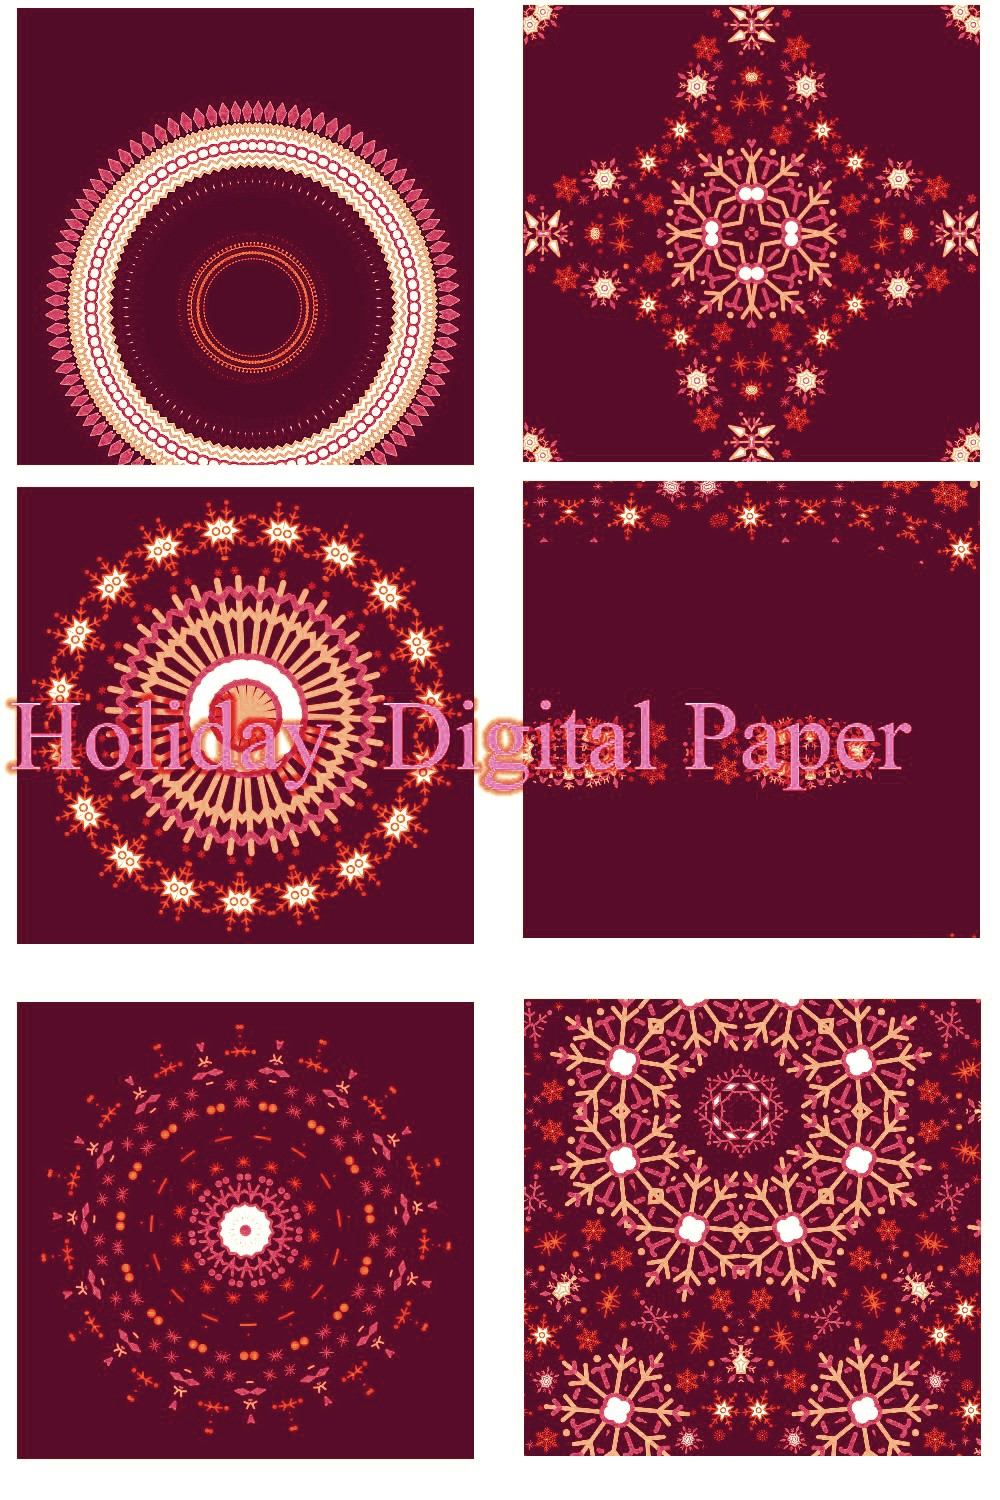 Holiday Digital Paper Design pinterest image.